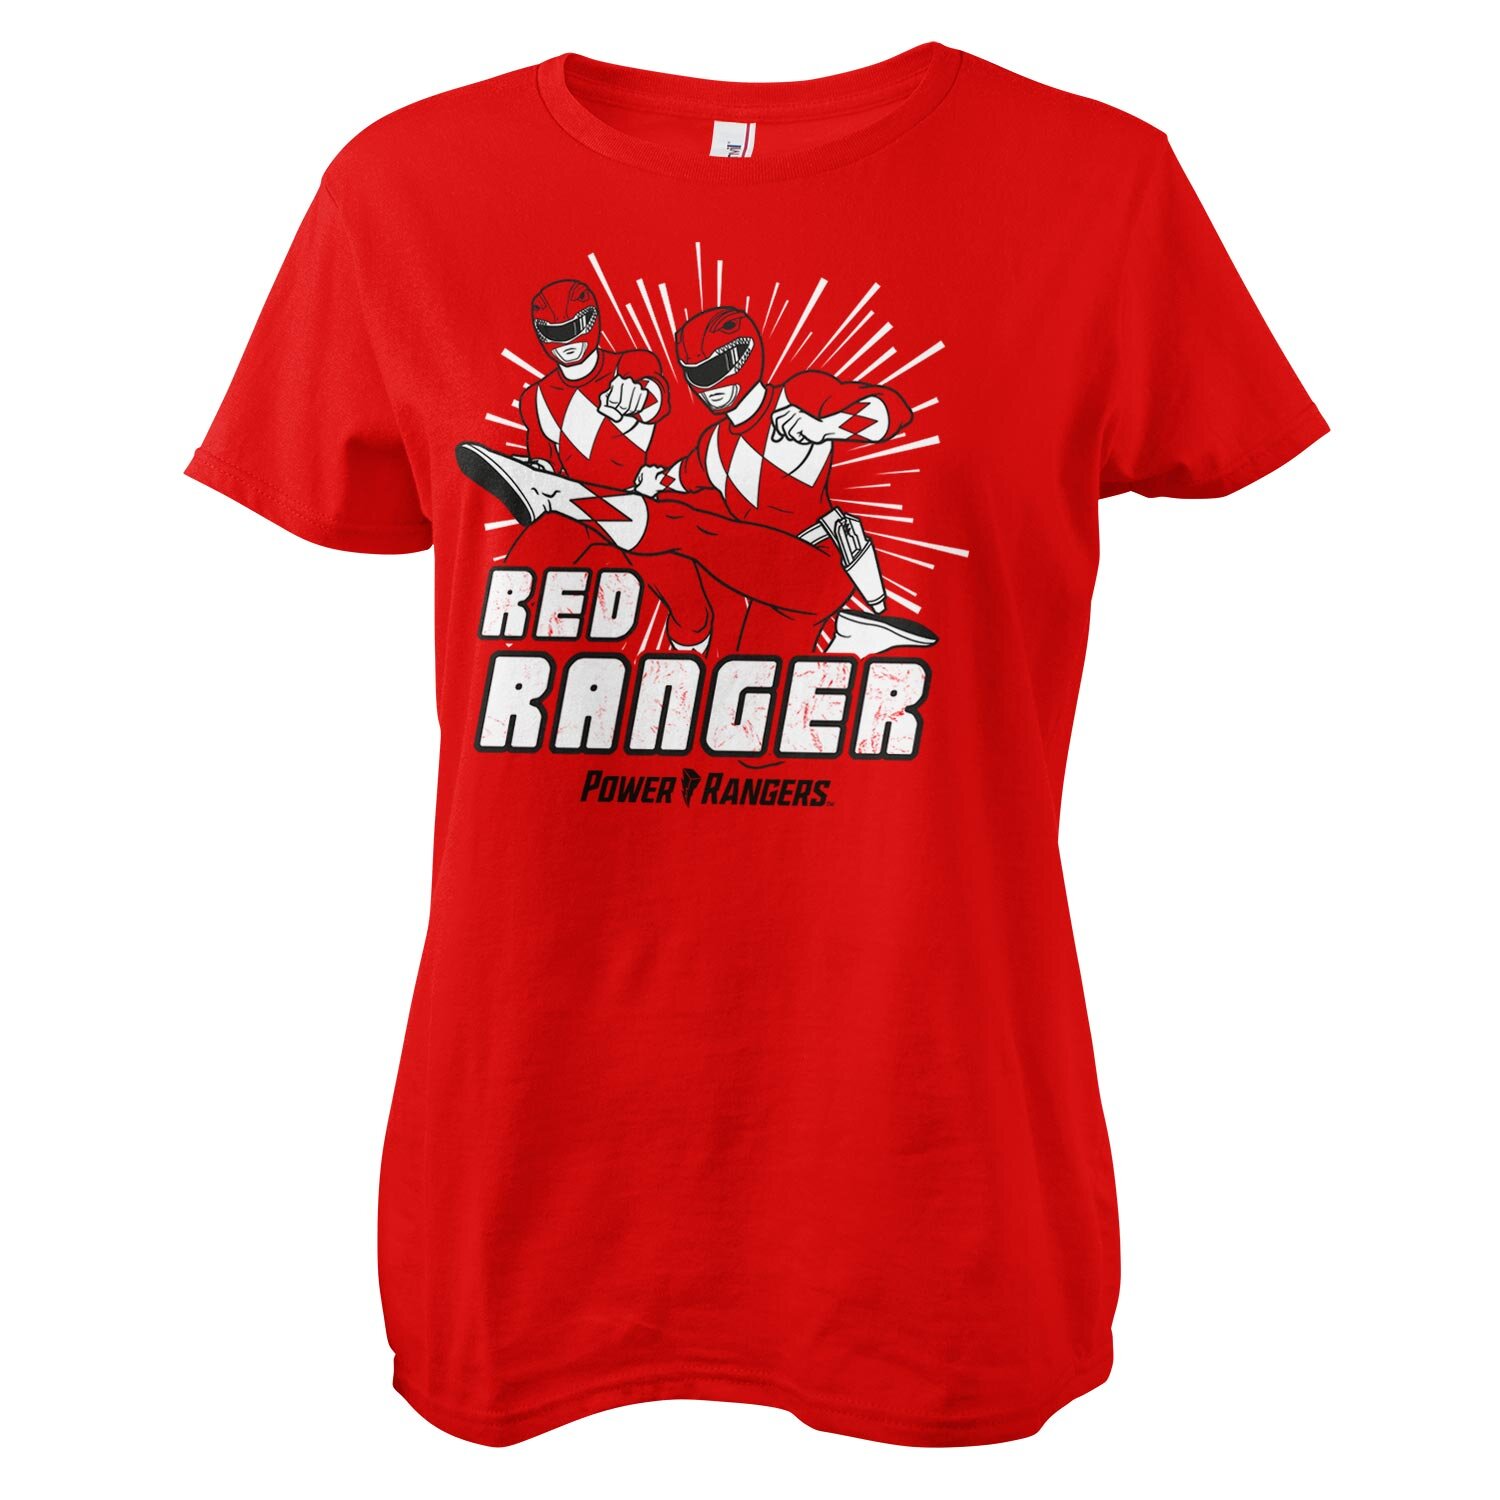 Red Ranger Girly Tee